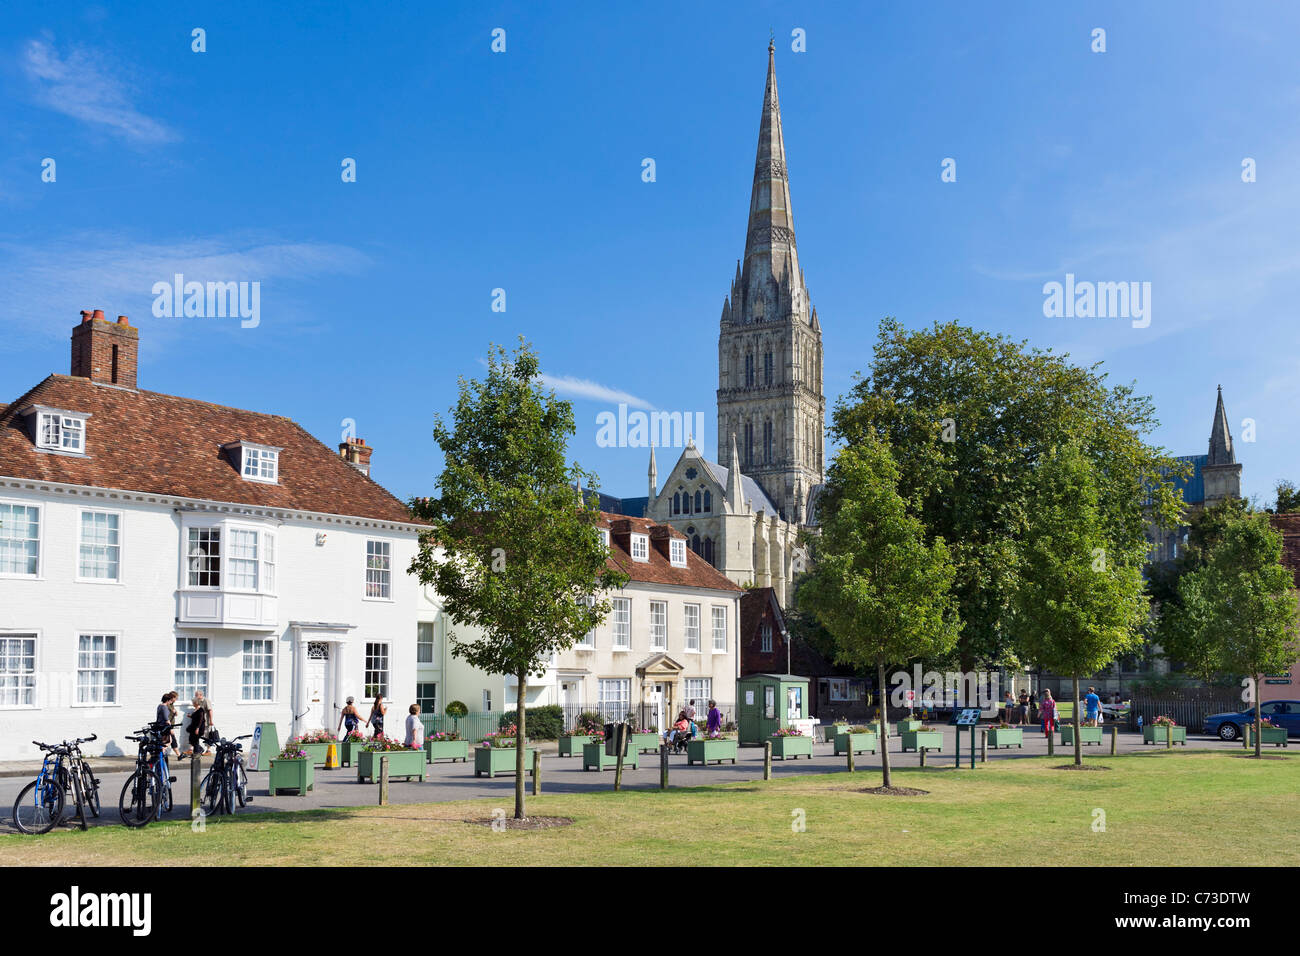 La flèche de la cathédrale de Salisbury de choristes Square, Salisbury, Wiltshire, Angleterre, Royaume-Uni Banque D'Images